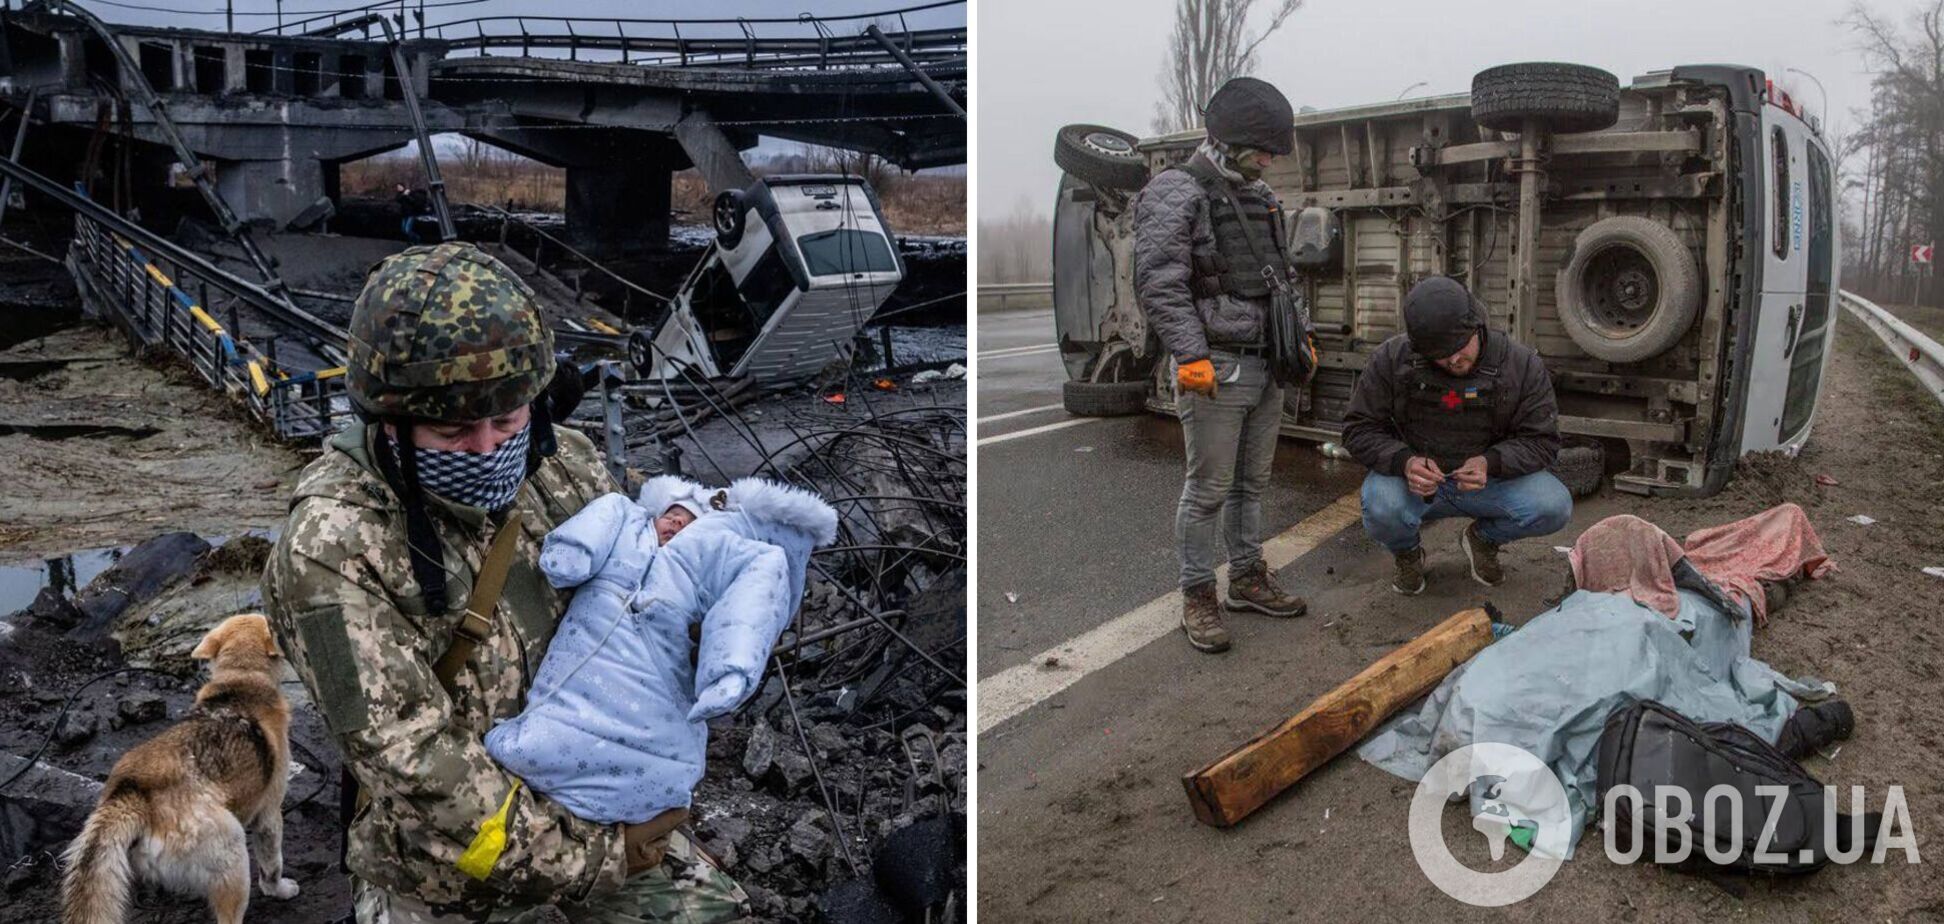 Відвідувачам популярного російського сайту показали знімки жертв різанини у Бучі